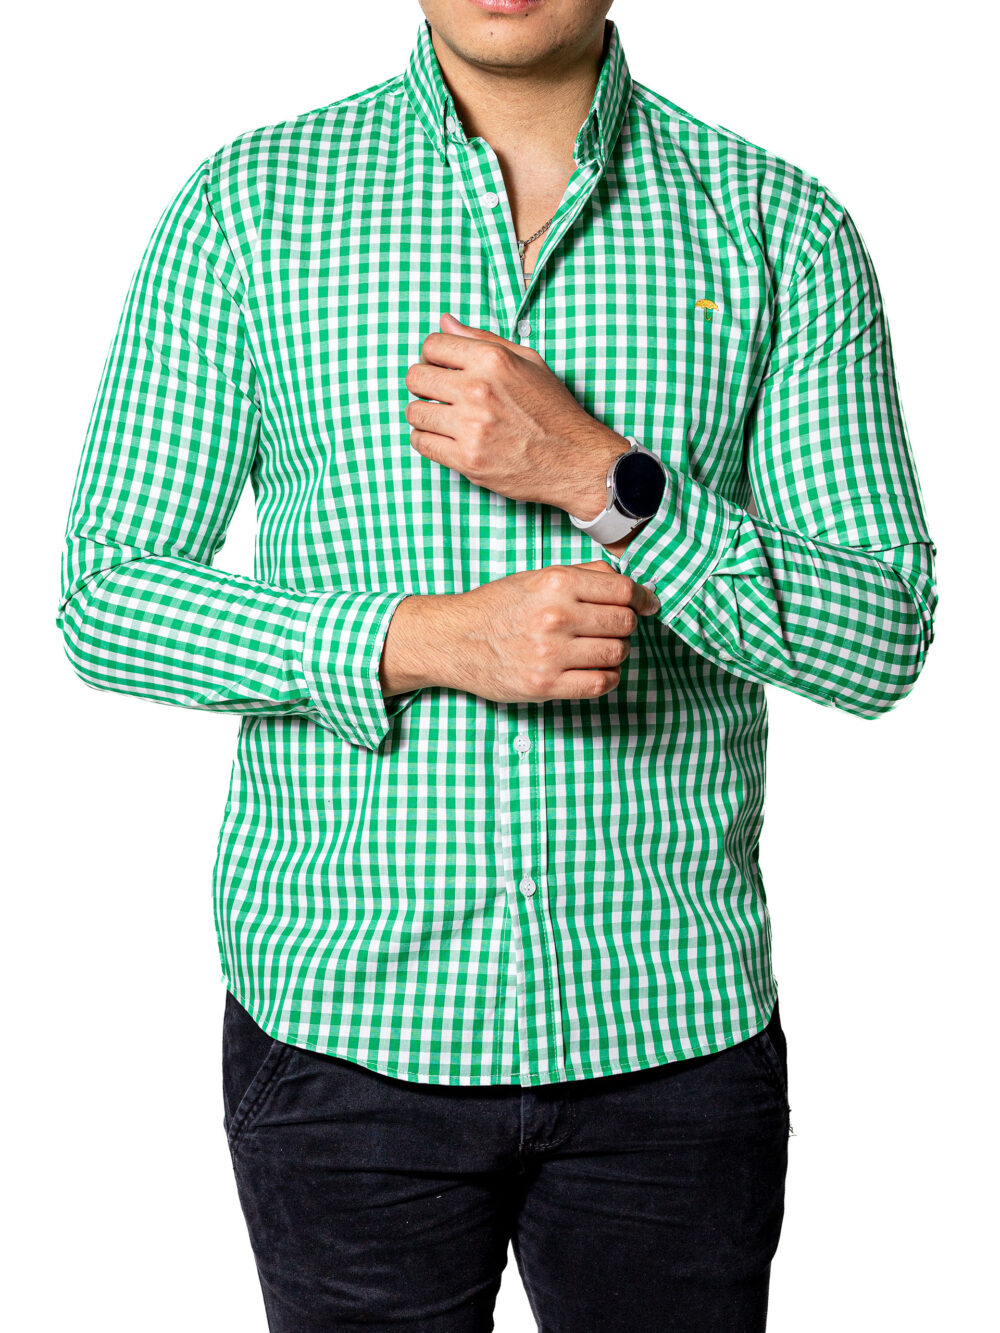 Camisa Hombre Casual Slim Fit Cuadros Verdes, Blancos 004 2